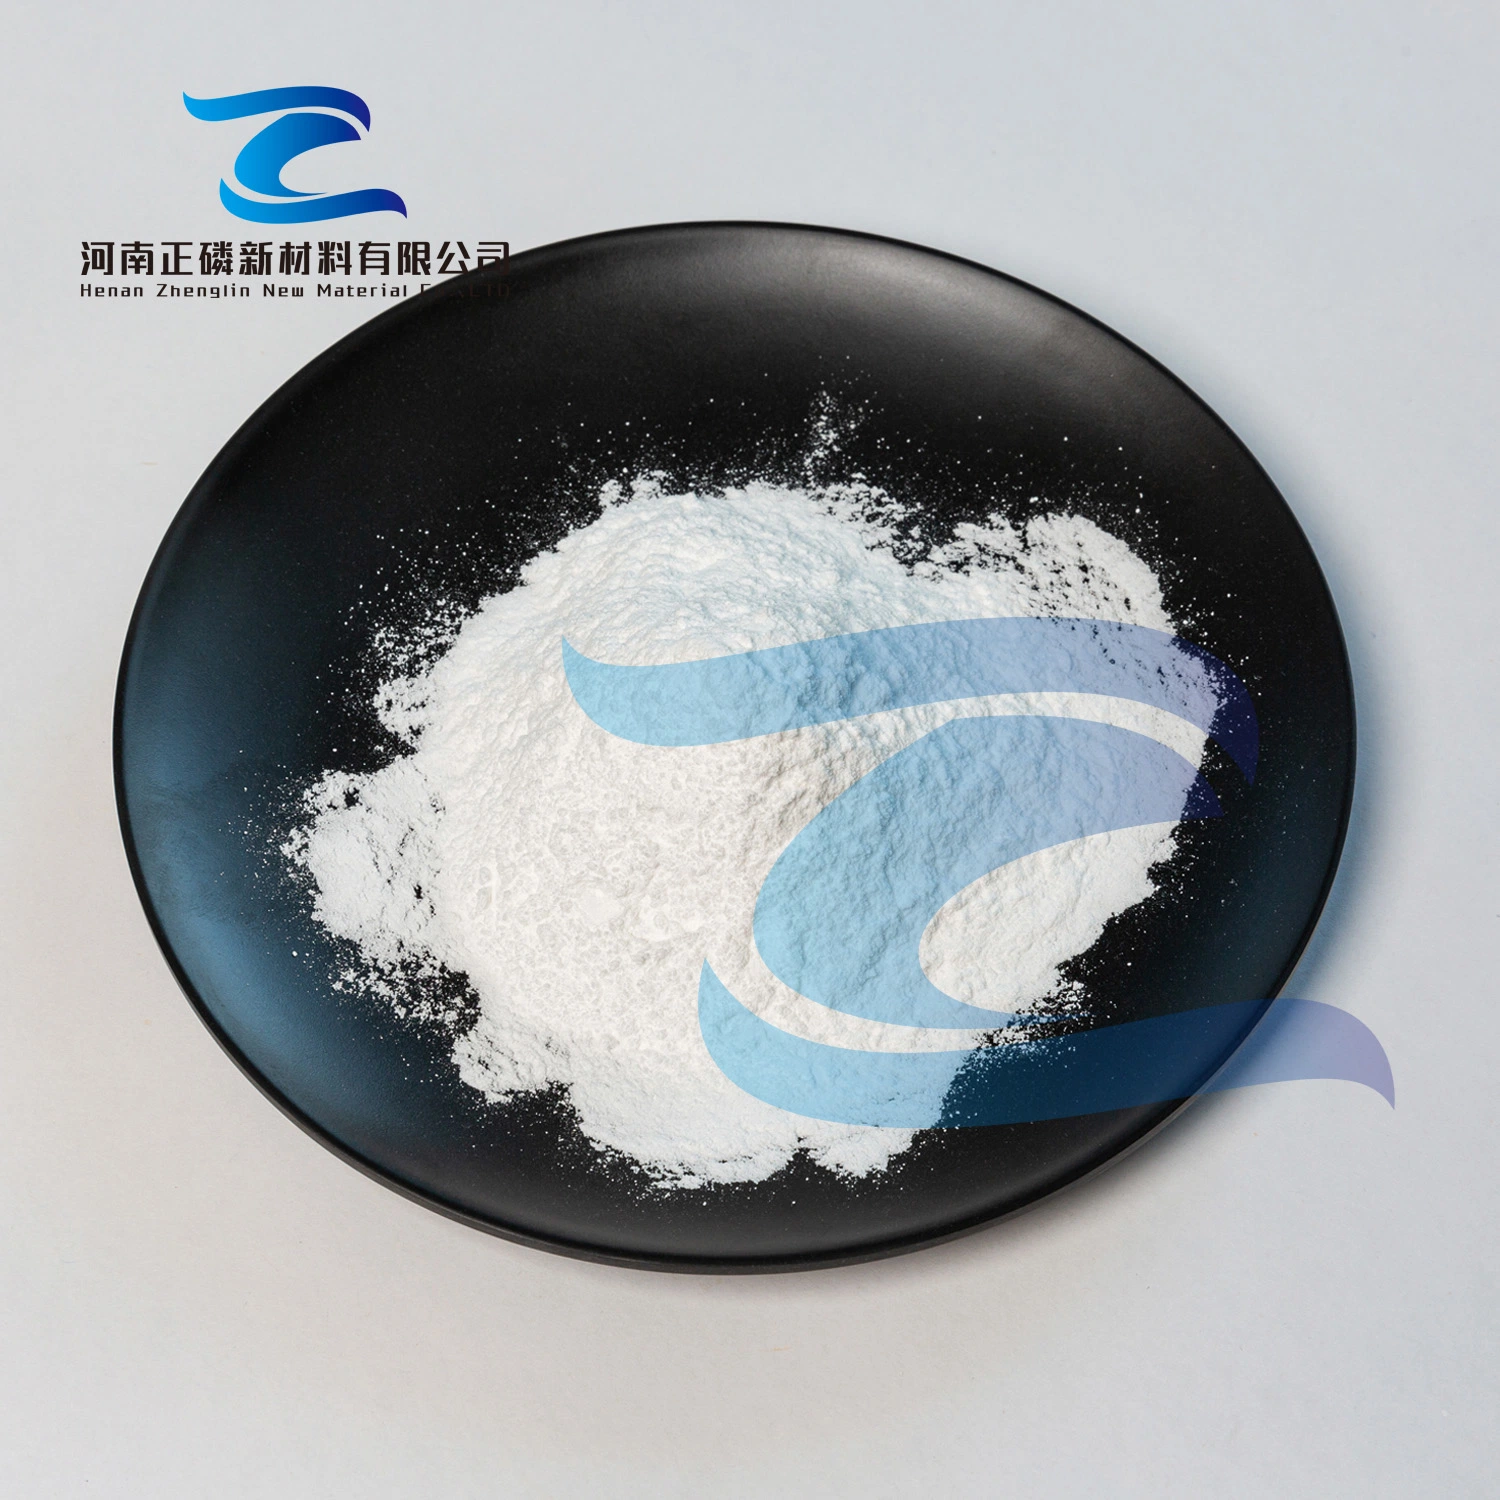 Reinigungsmittel, Keramik, Wasserreiniger, STPP-Natriumphosphat in technischer Qualität